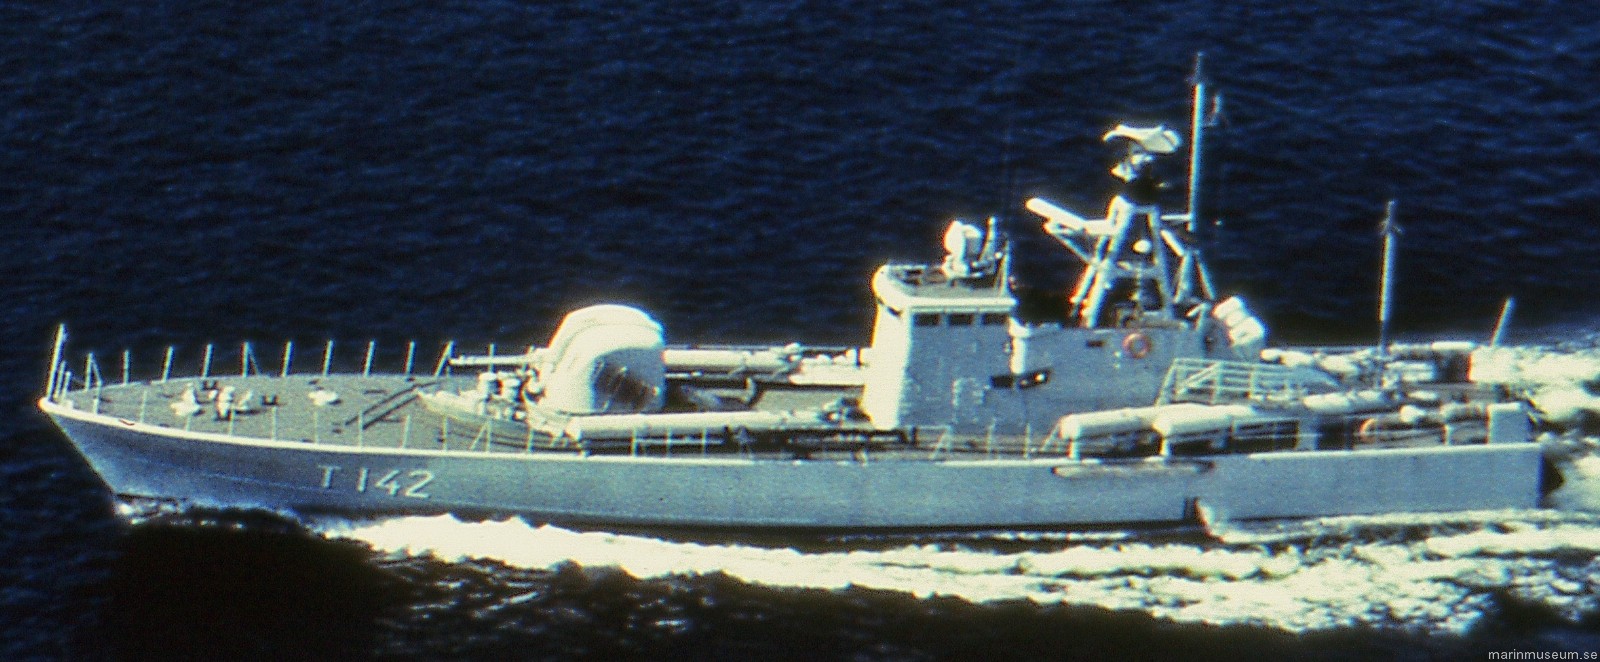 t142 ystad hswms hms norrköping class fast attack craft torpedo missile patrol boat swedish navy svenska marinen 02